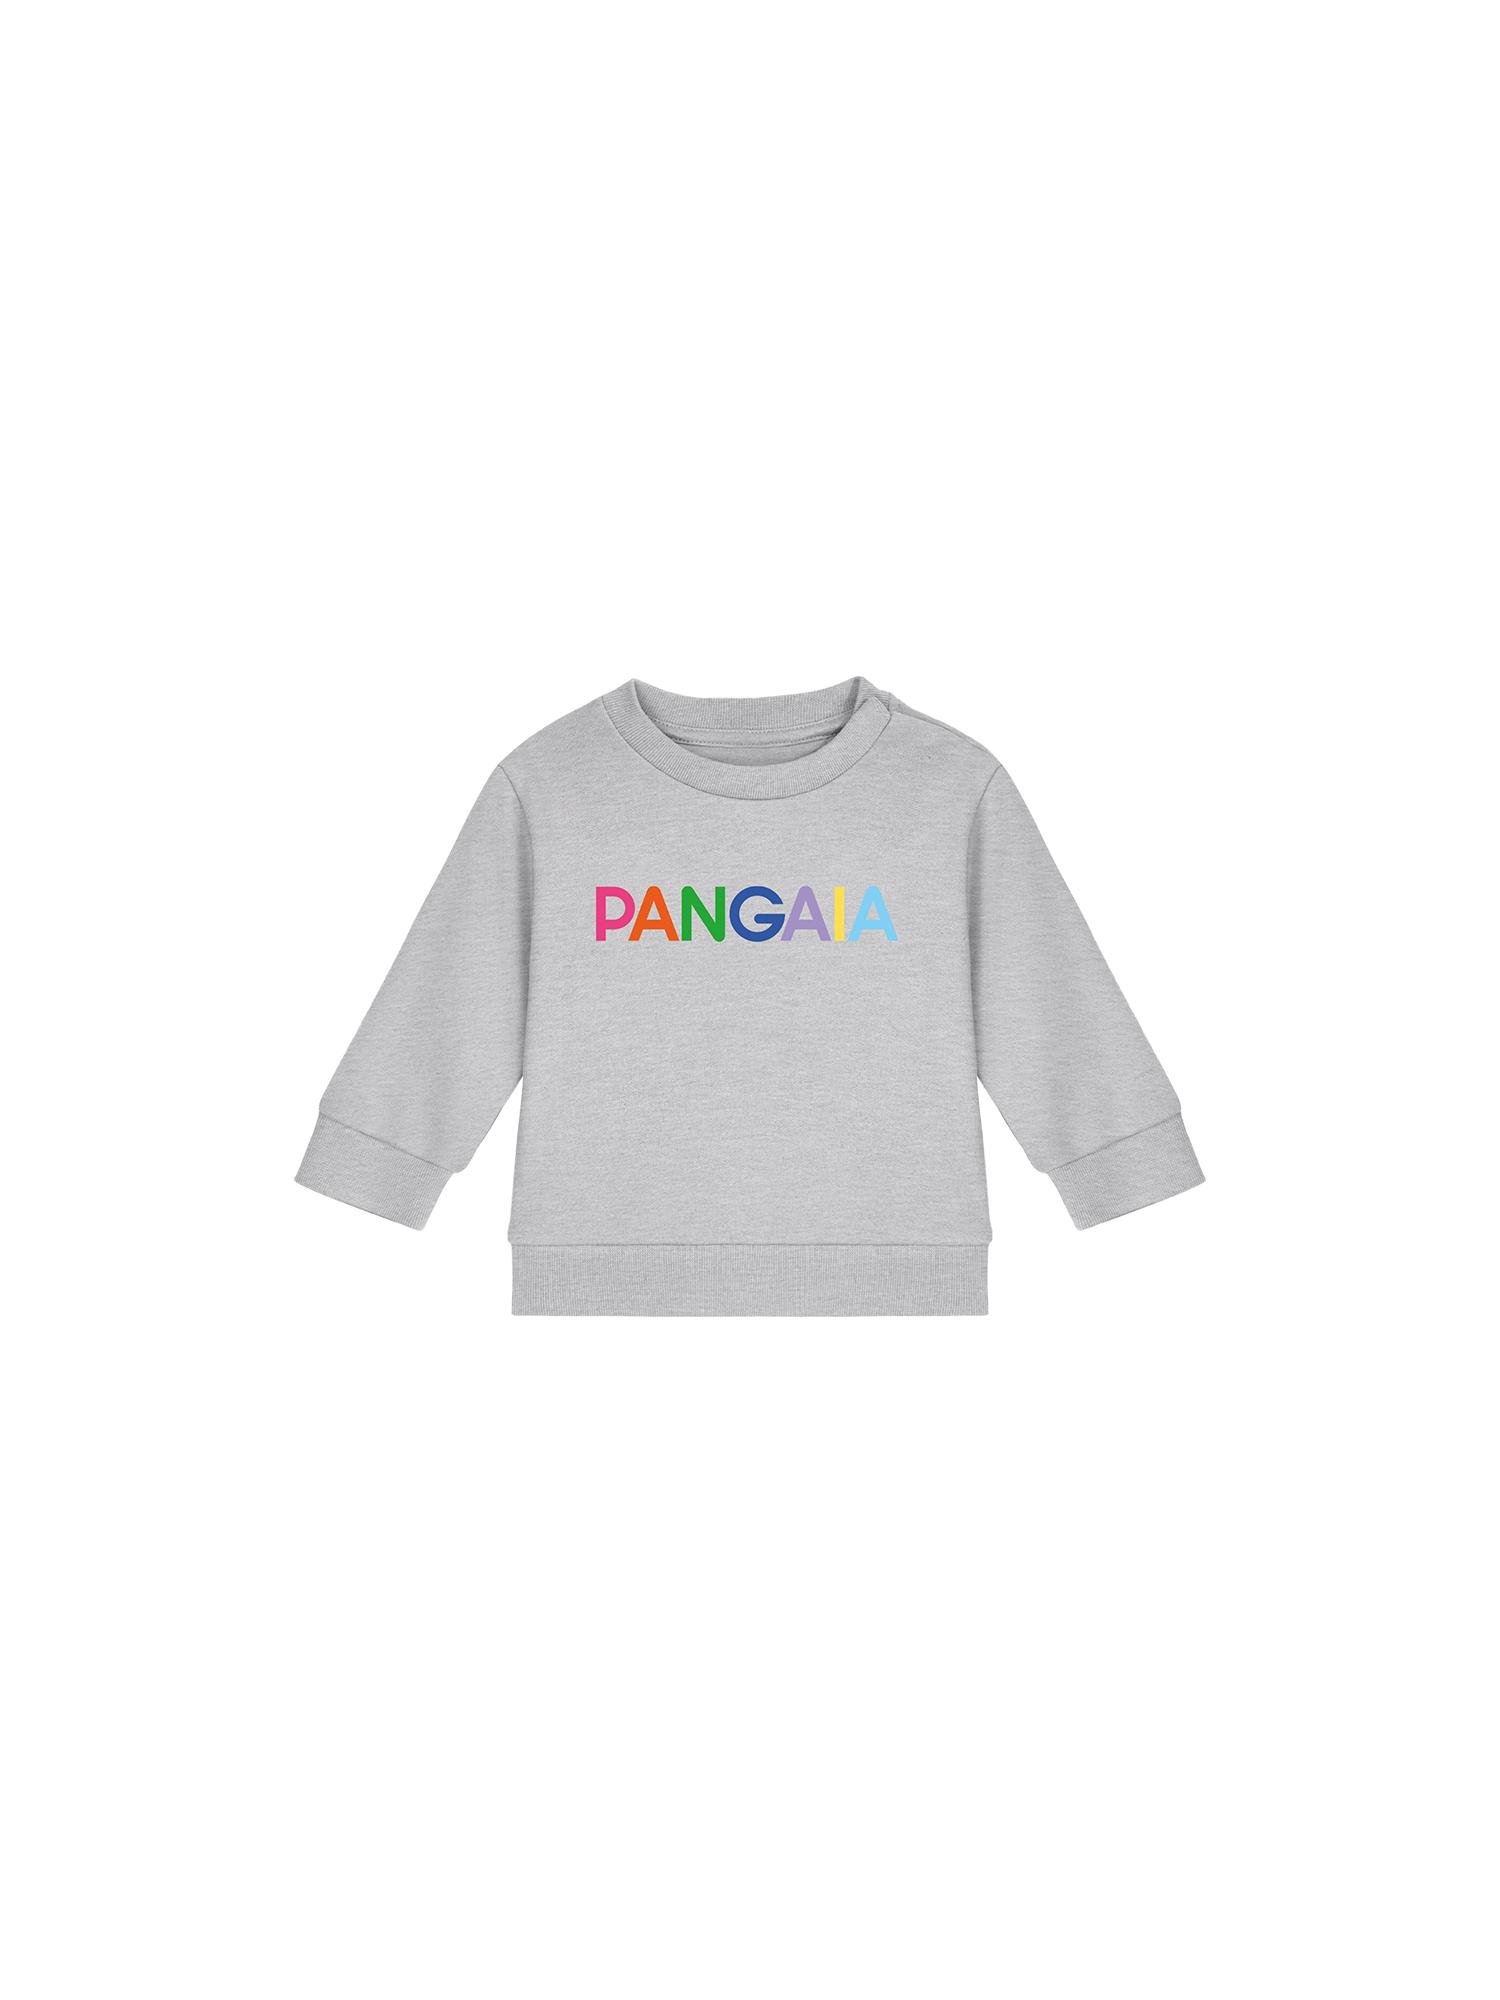 Baby 365 Midweight Pangaia Sweatshirt by PANGAIA